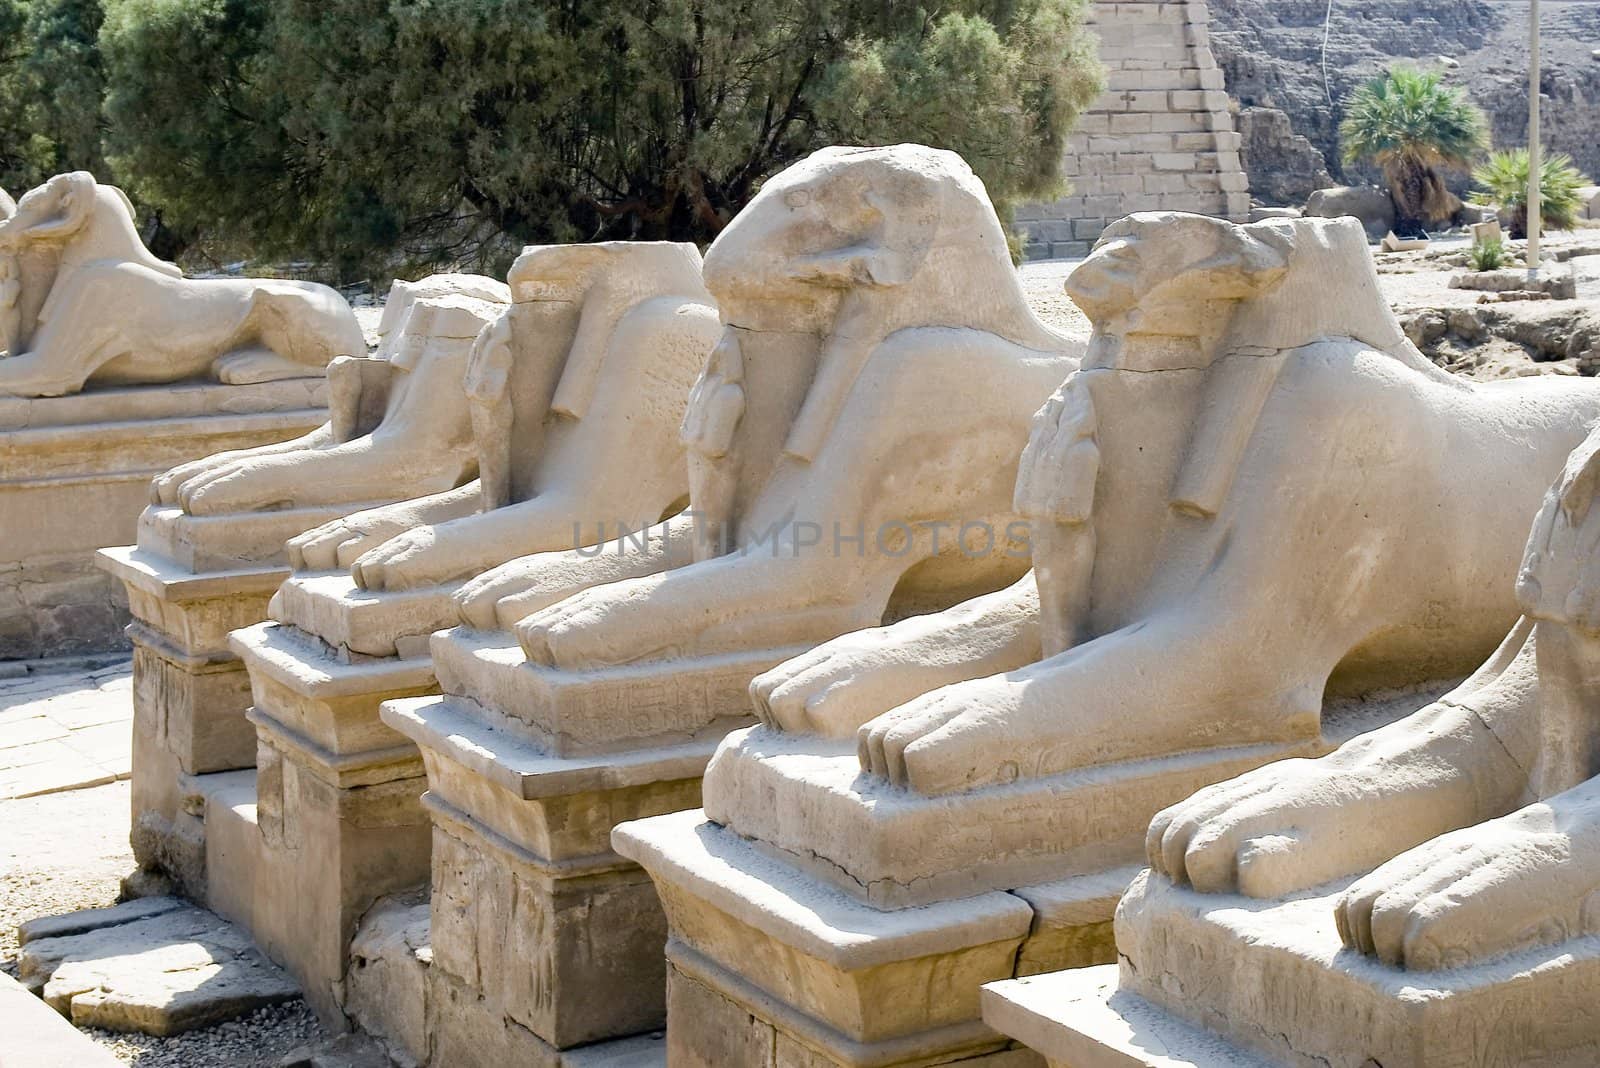 Luxor. Karnak